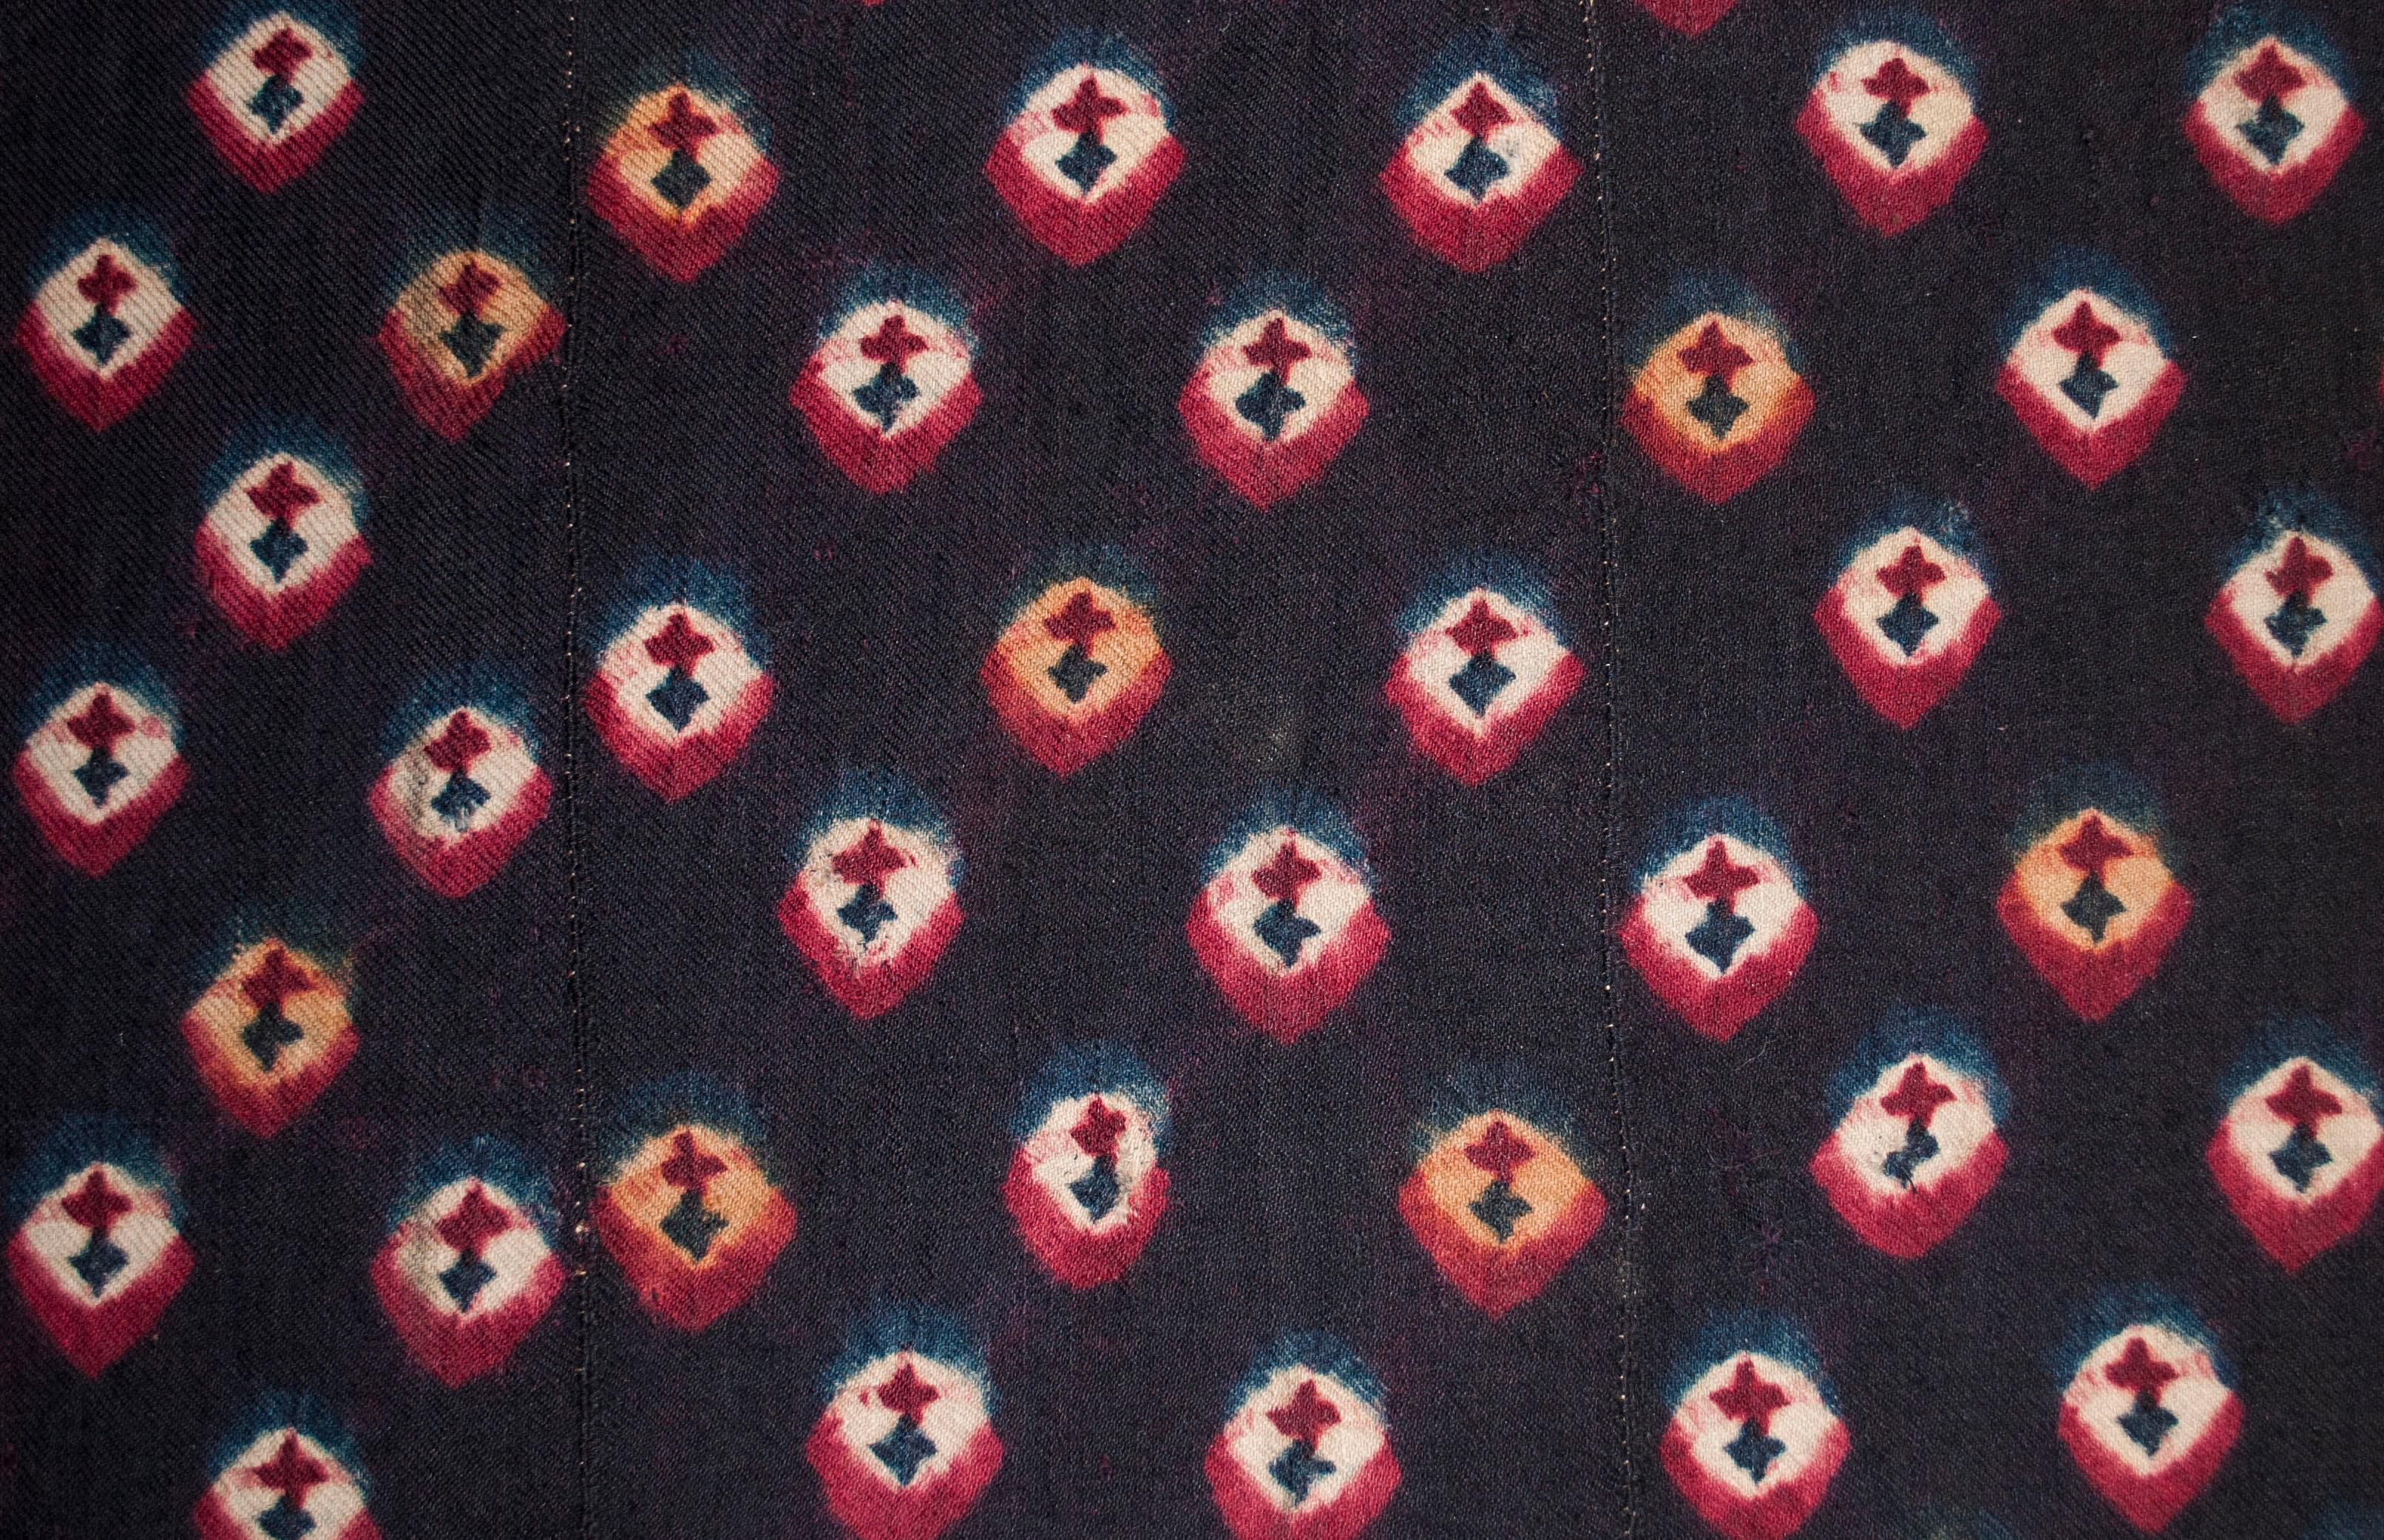 Gefärbte Tafel aus Tibet, um 1900.

Diese Art von krawattengefärbter Wolle, die von tibetischen Nomaden auf dem Rückenriemenwebstuhl gewebt wurde, wurde traditionell für Pferdedecken, Sitzmatten oder als Besatz für Satteldecken und Schlafteppiche